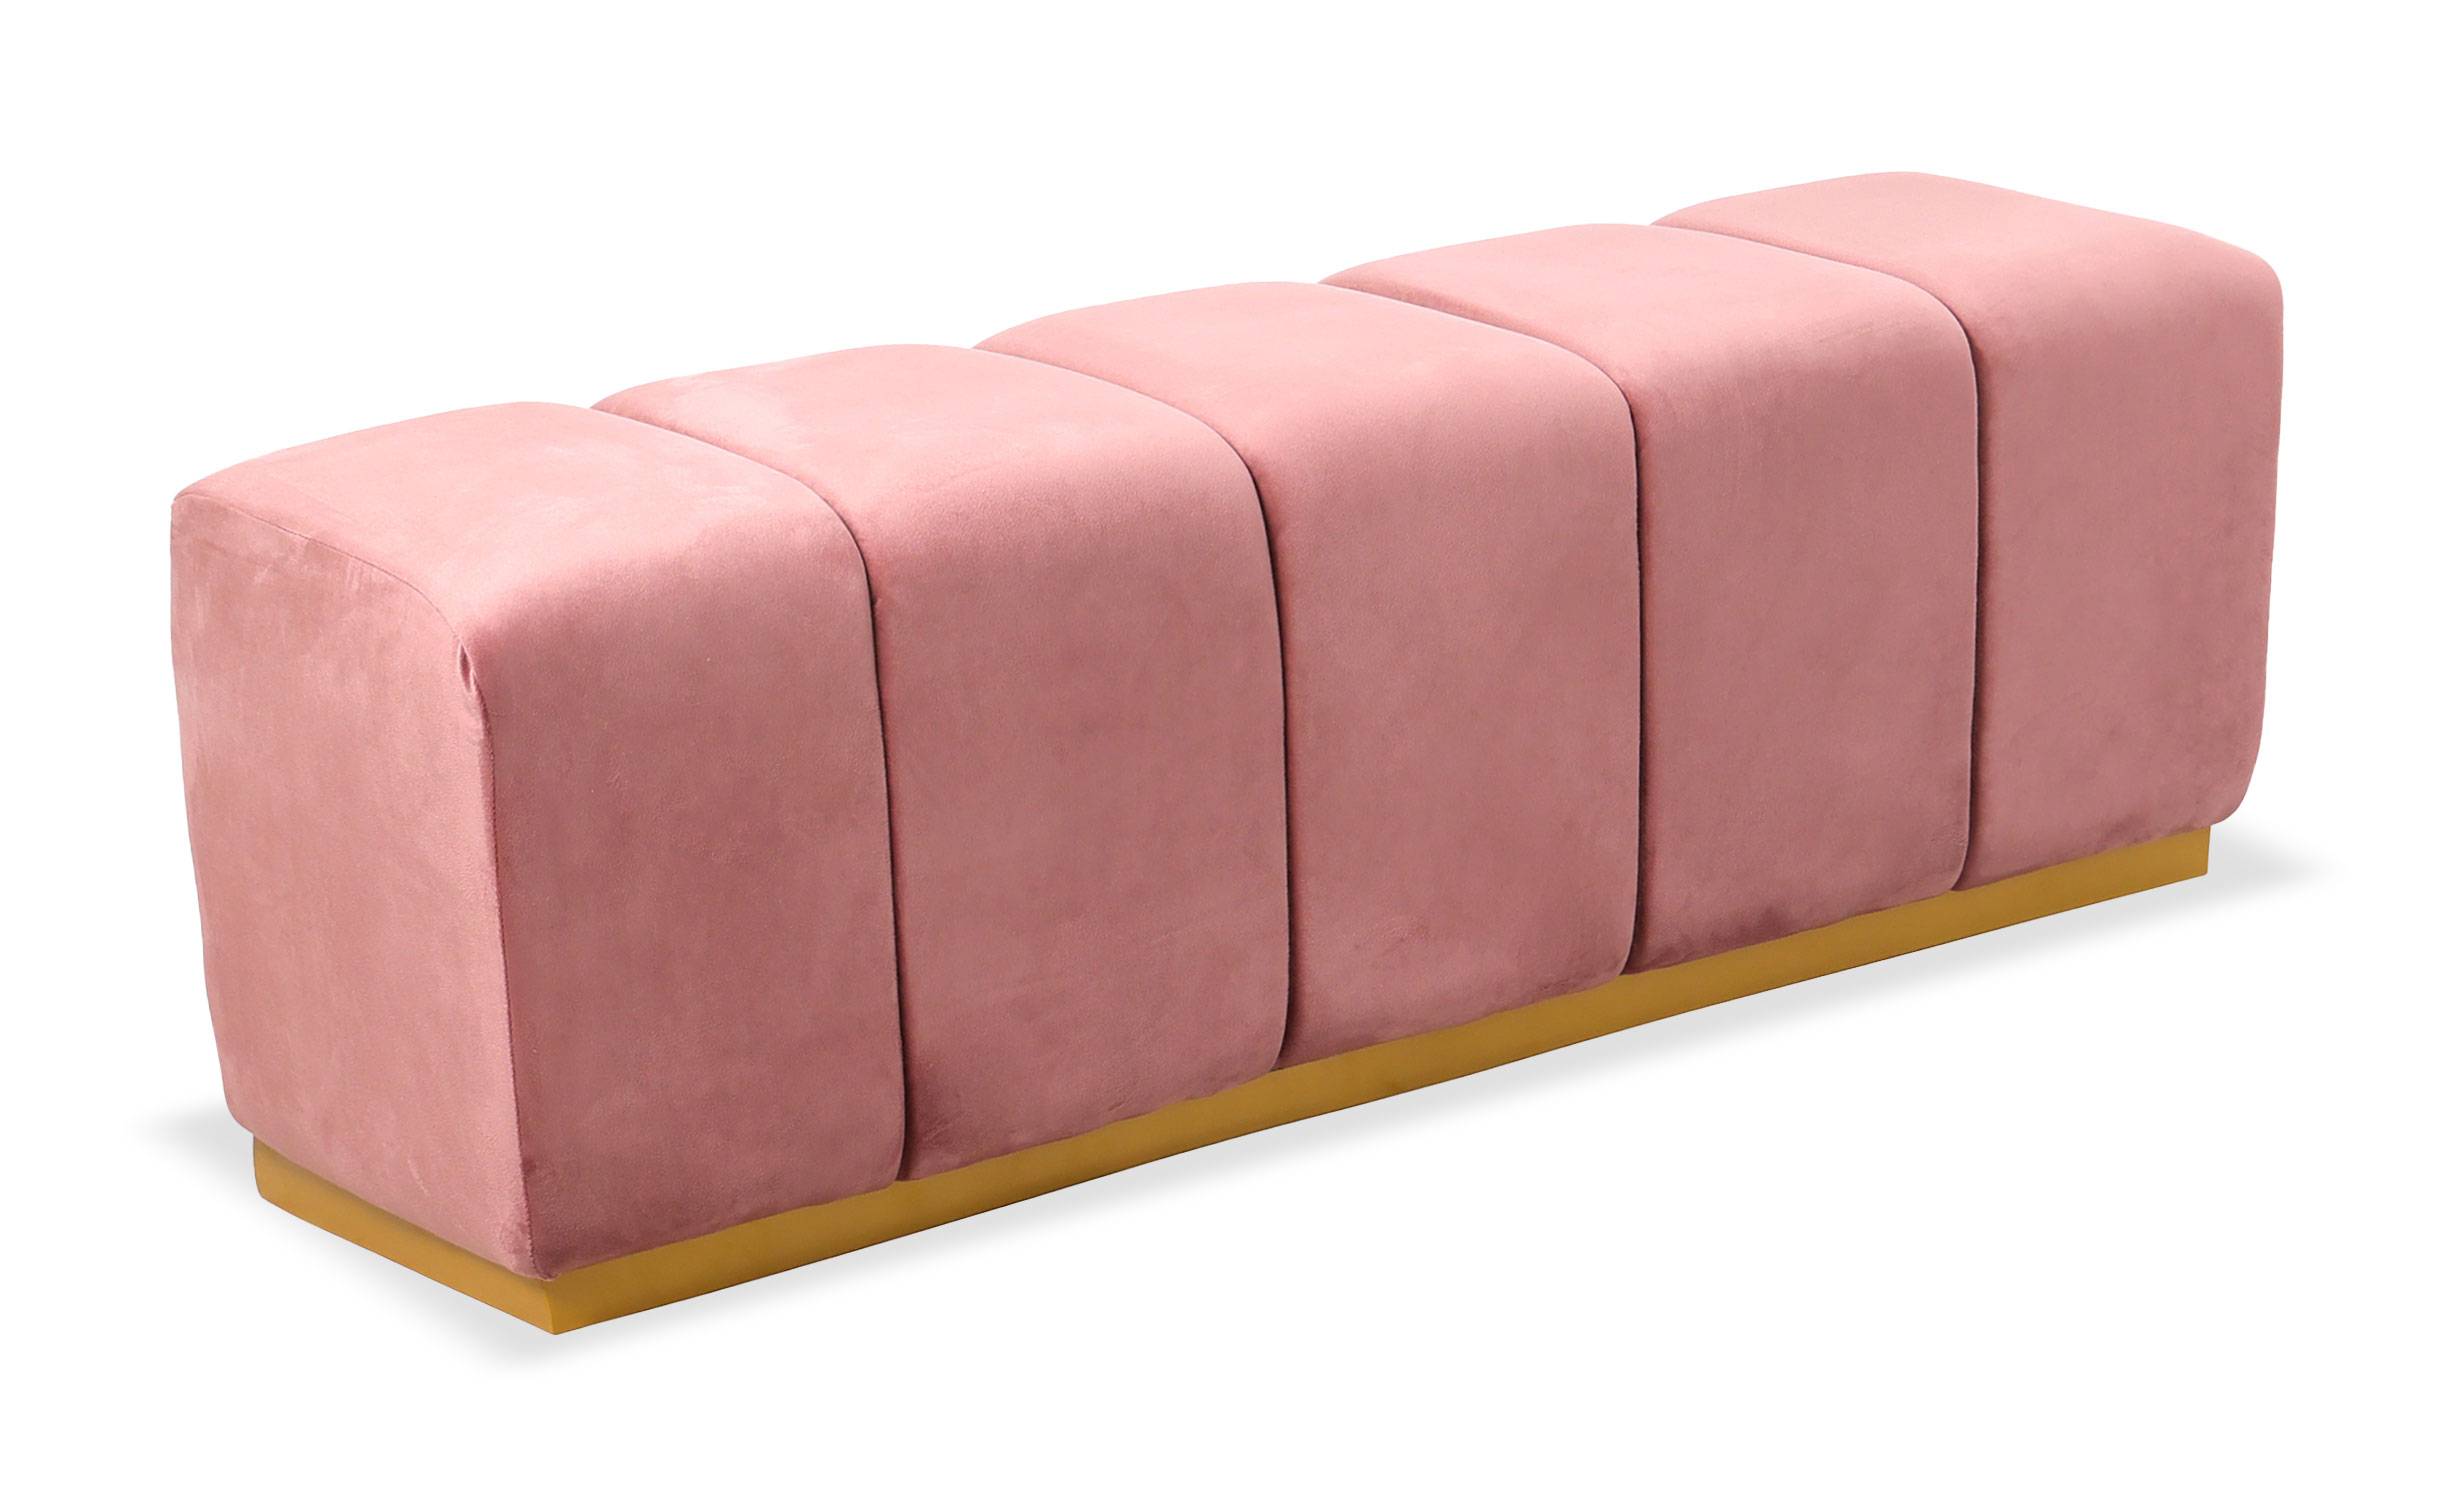 Banqueta acolchada Garamond para comidas o pie de cama en terciopelo rosado